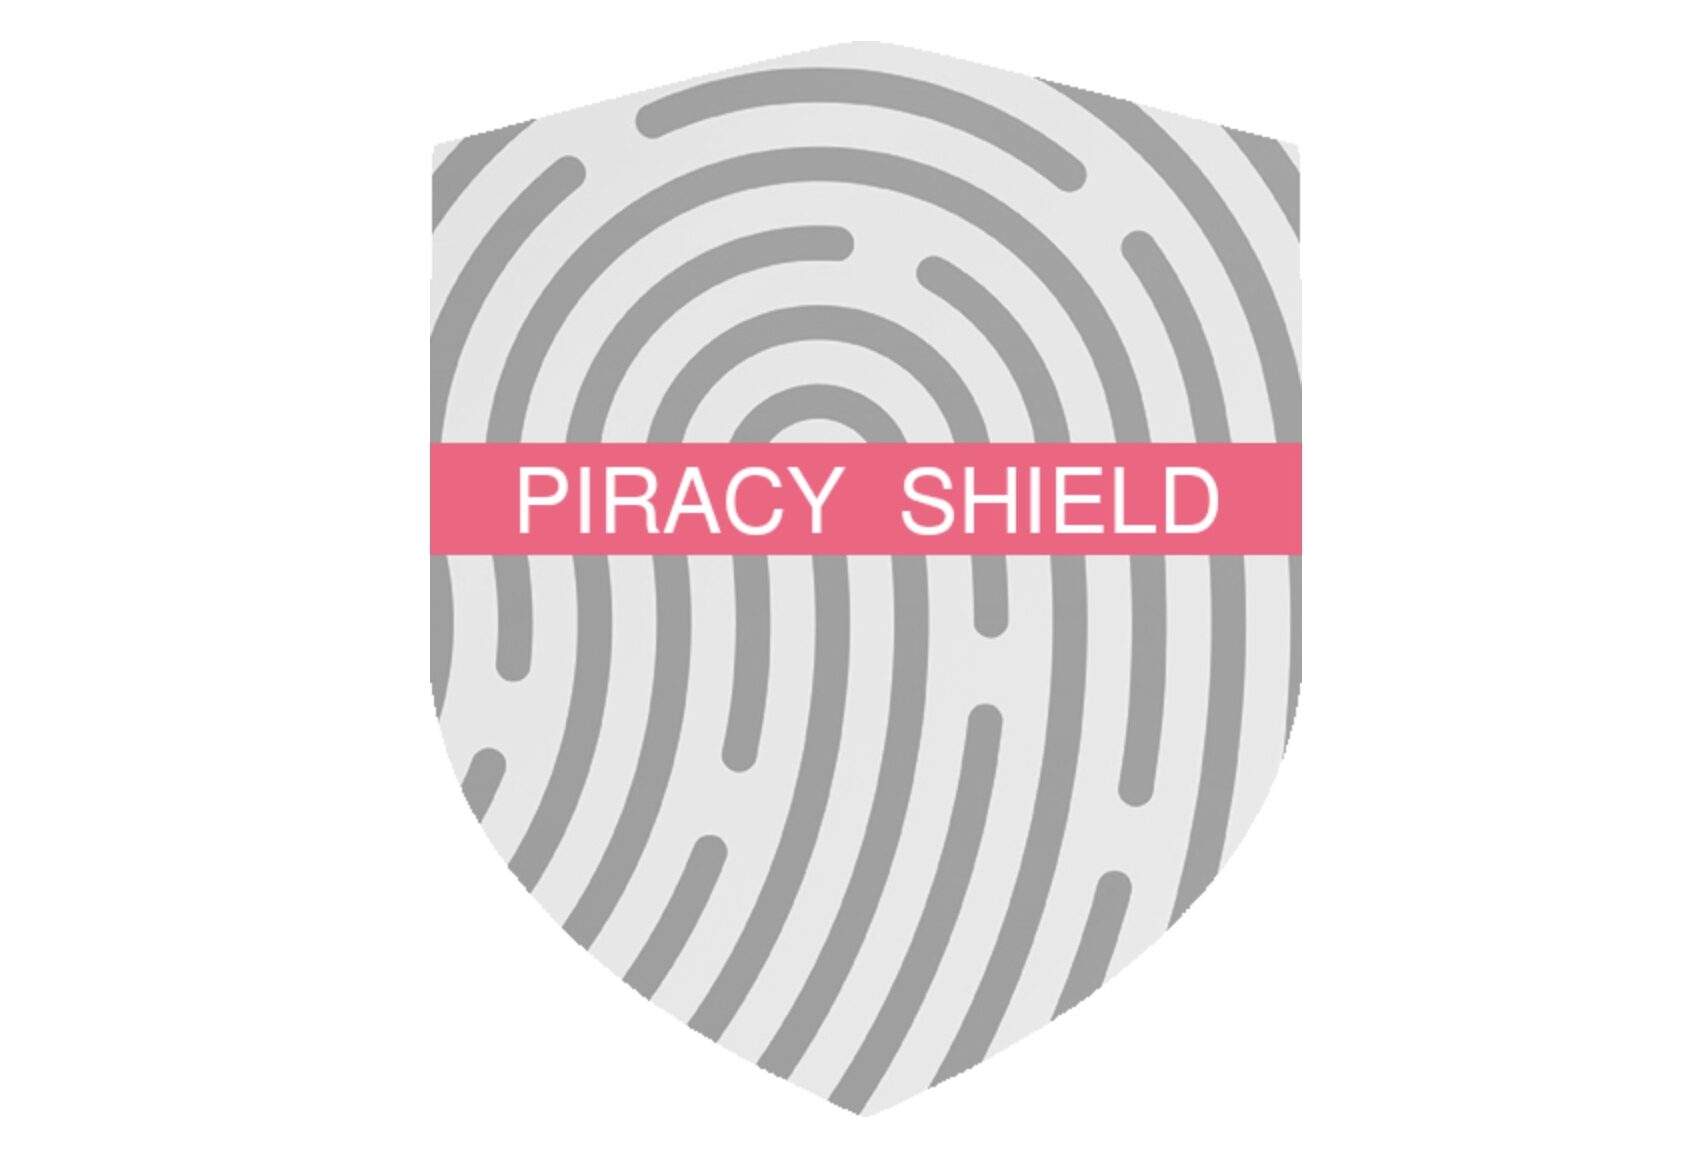 Piracy Shield ha quasi terminato gli IP da bloccare e chiede una revisione della legge al Governo